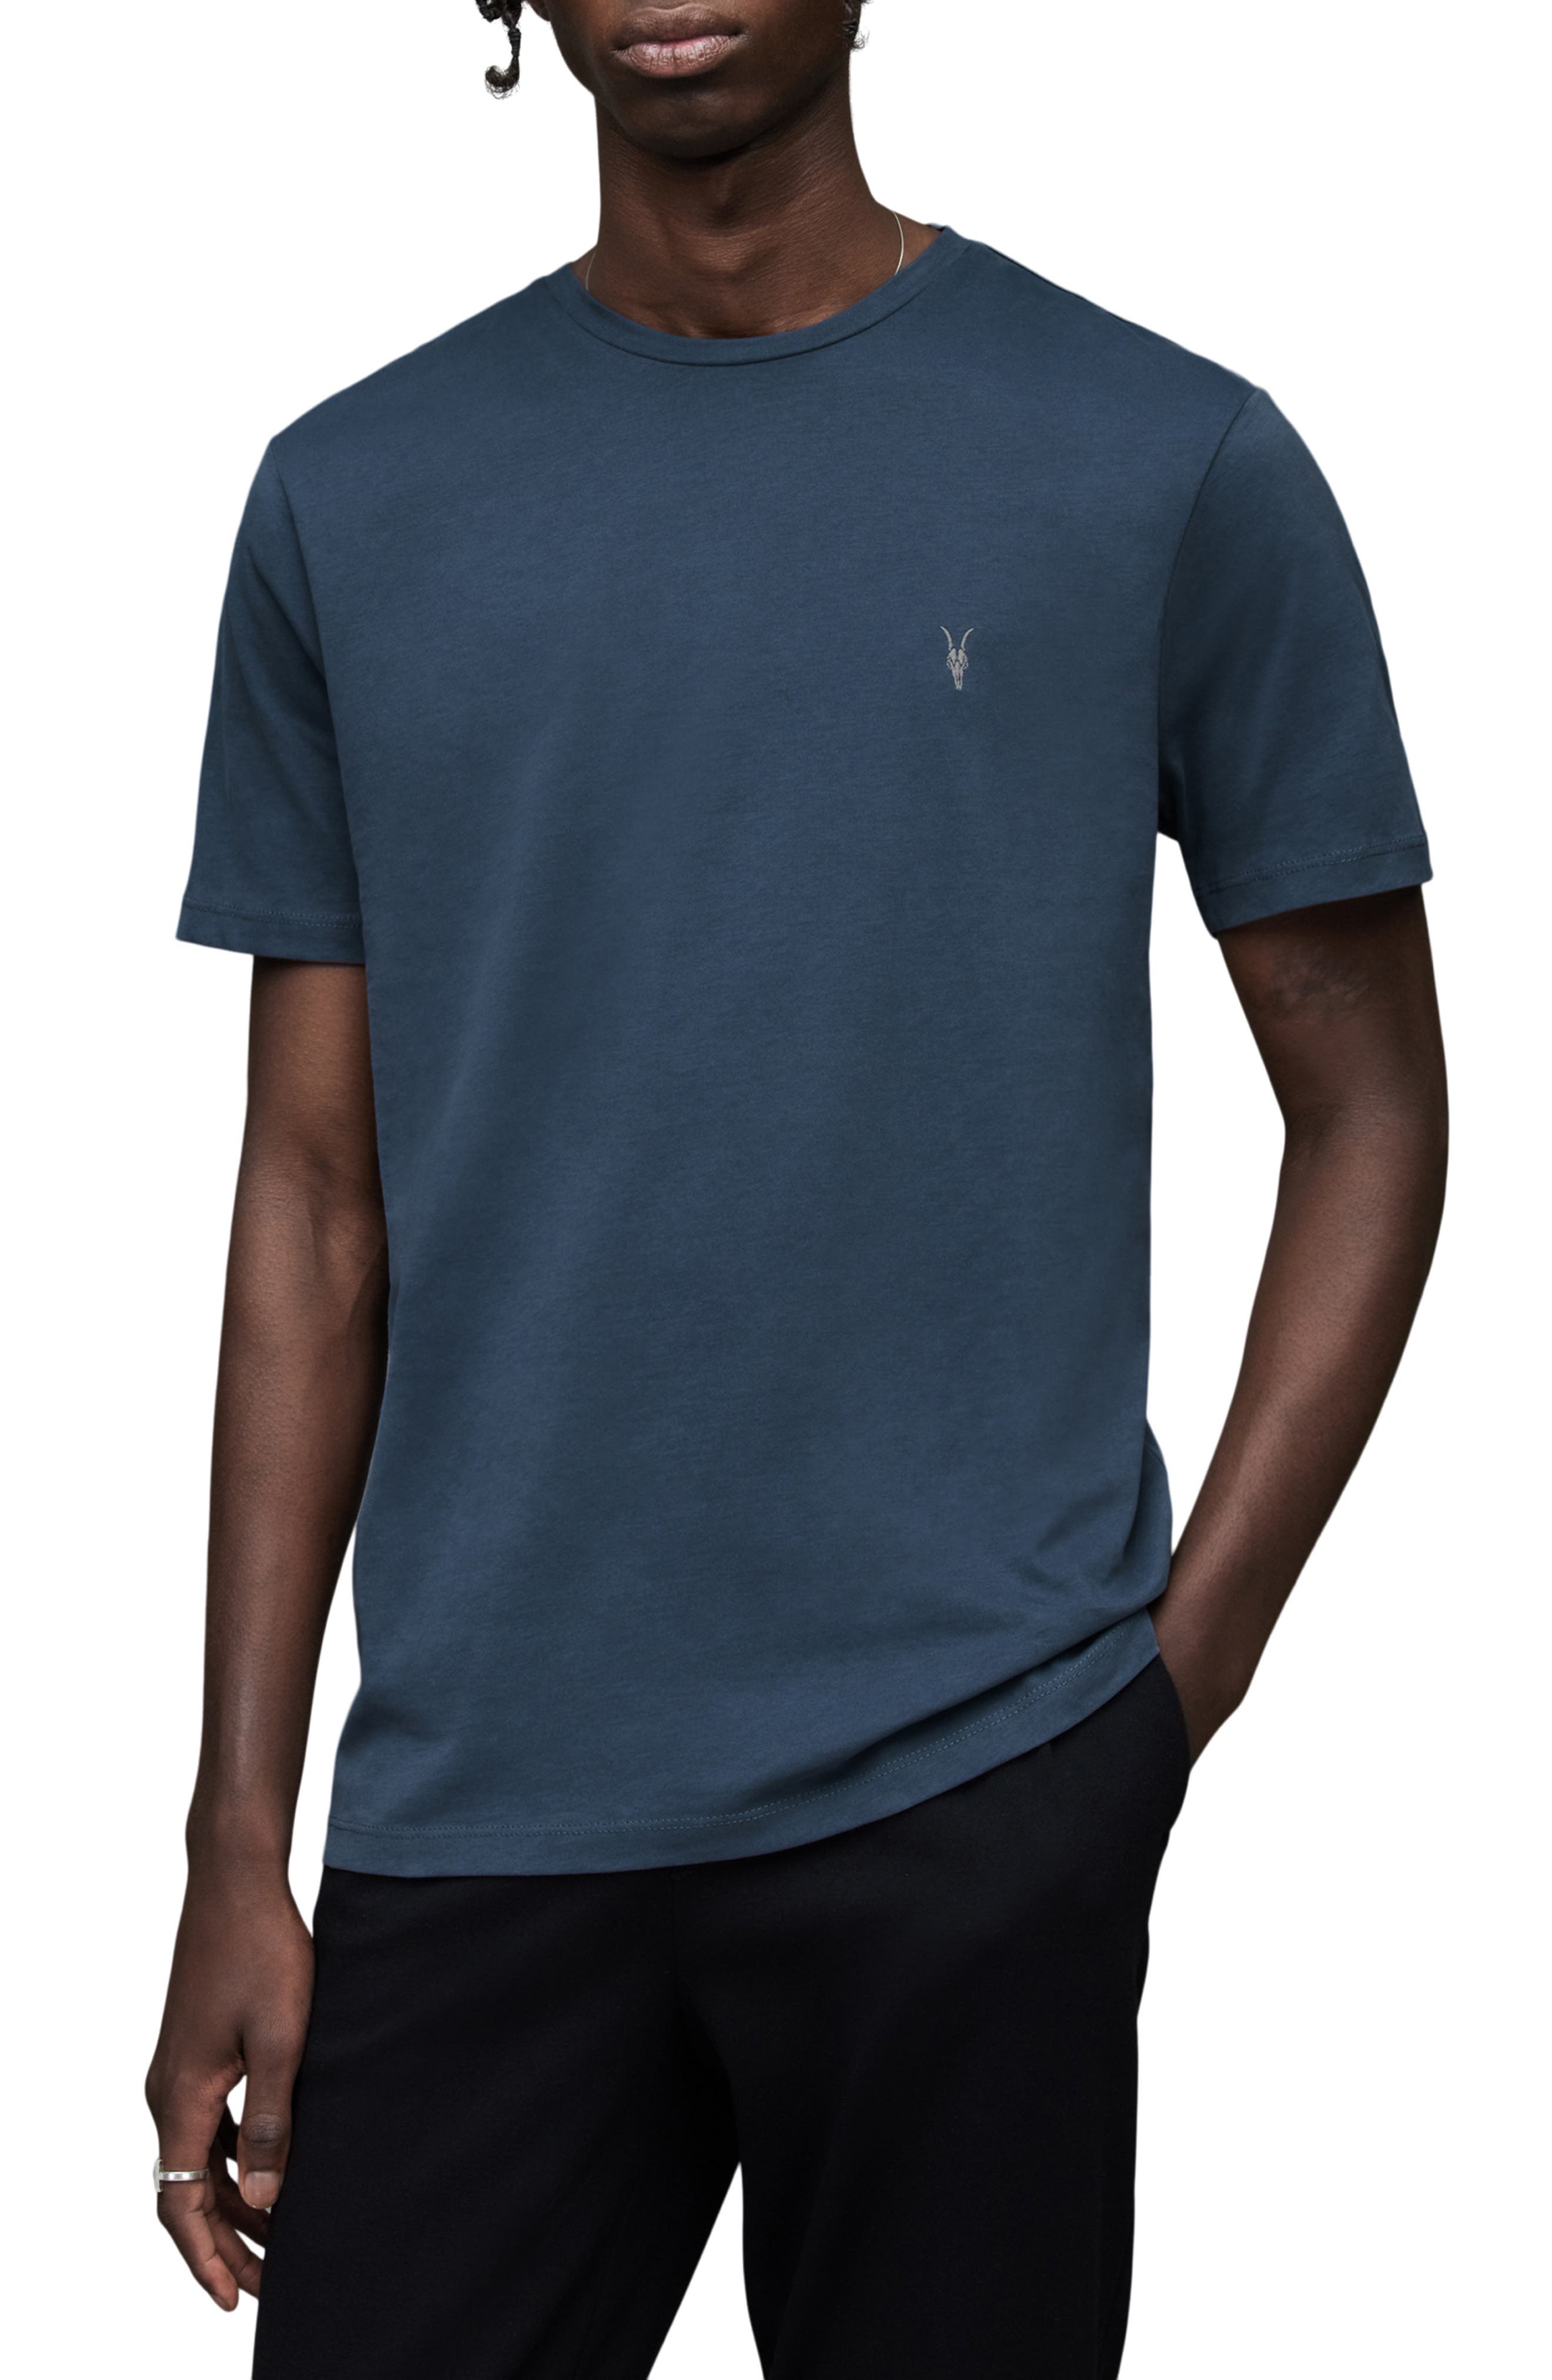 discount 87% Colcci Shirt WOMEN FASHION Shirts & T-shirts Shirt Print Blue/Green XS 